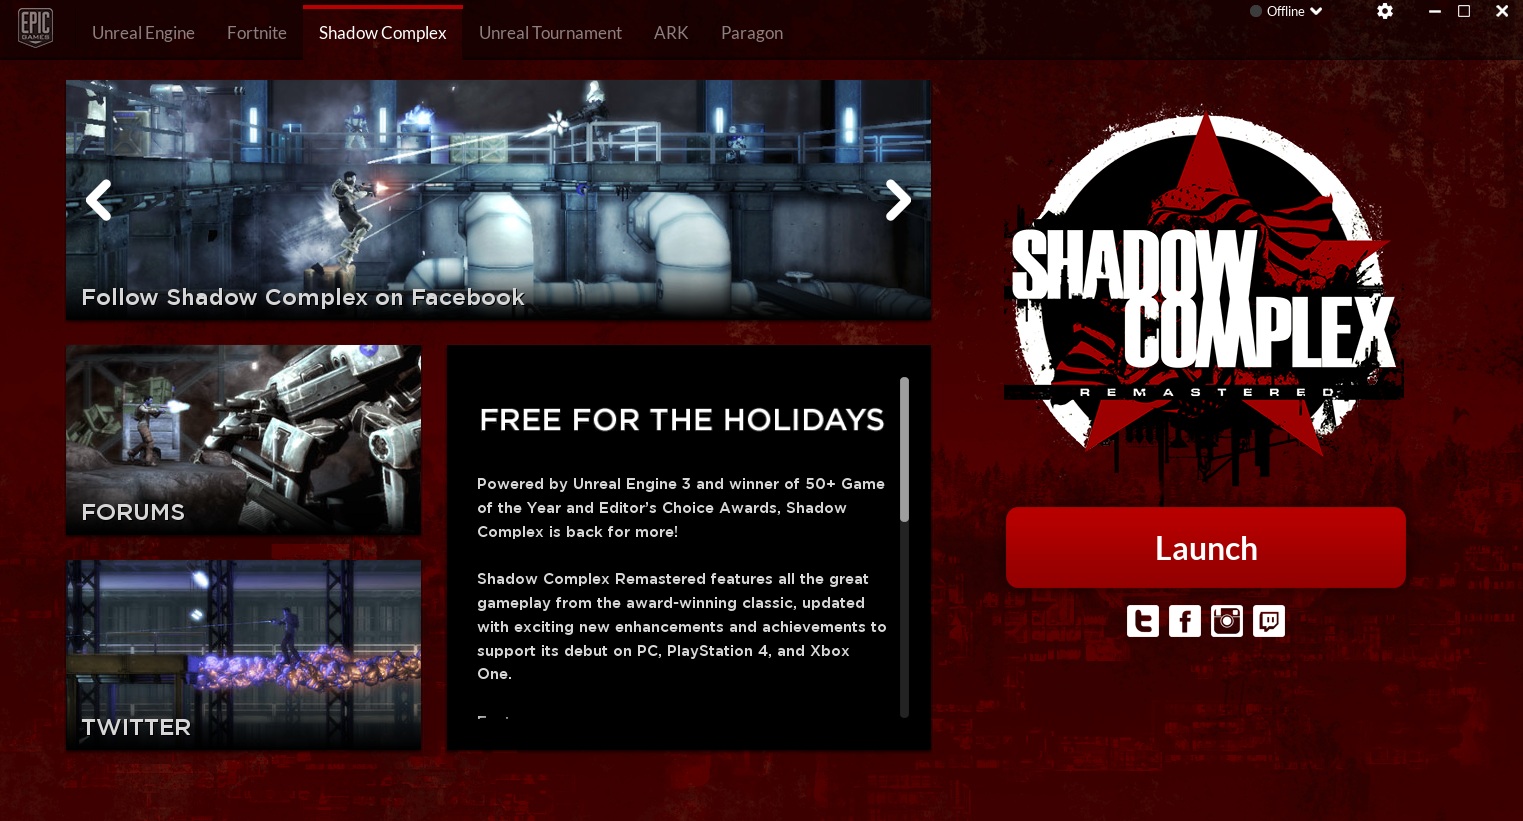 Nhanh tay tải miễn phí game hành động hấp dẫn: Shadow Complex